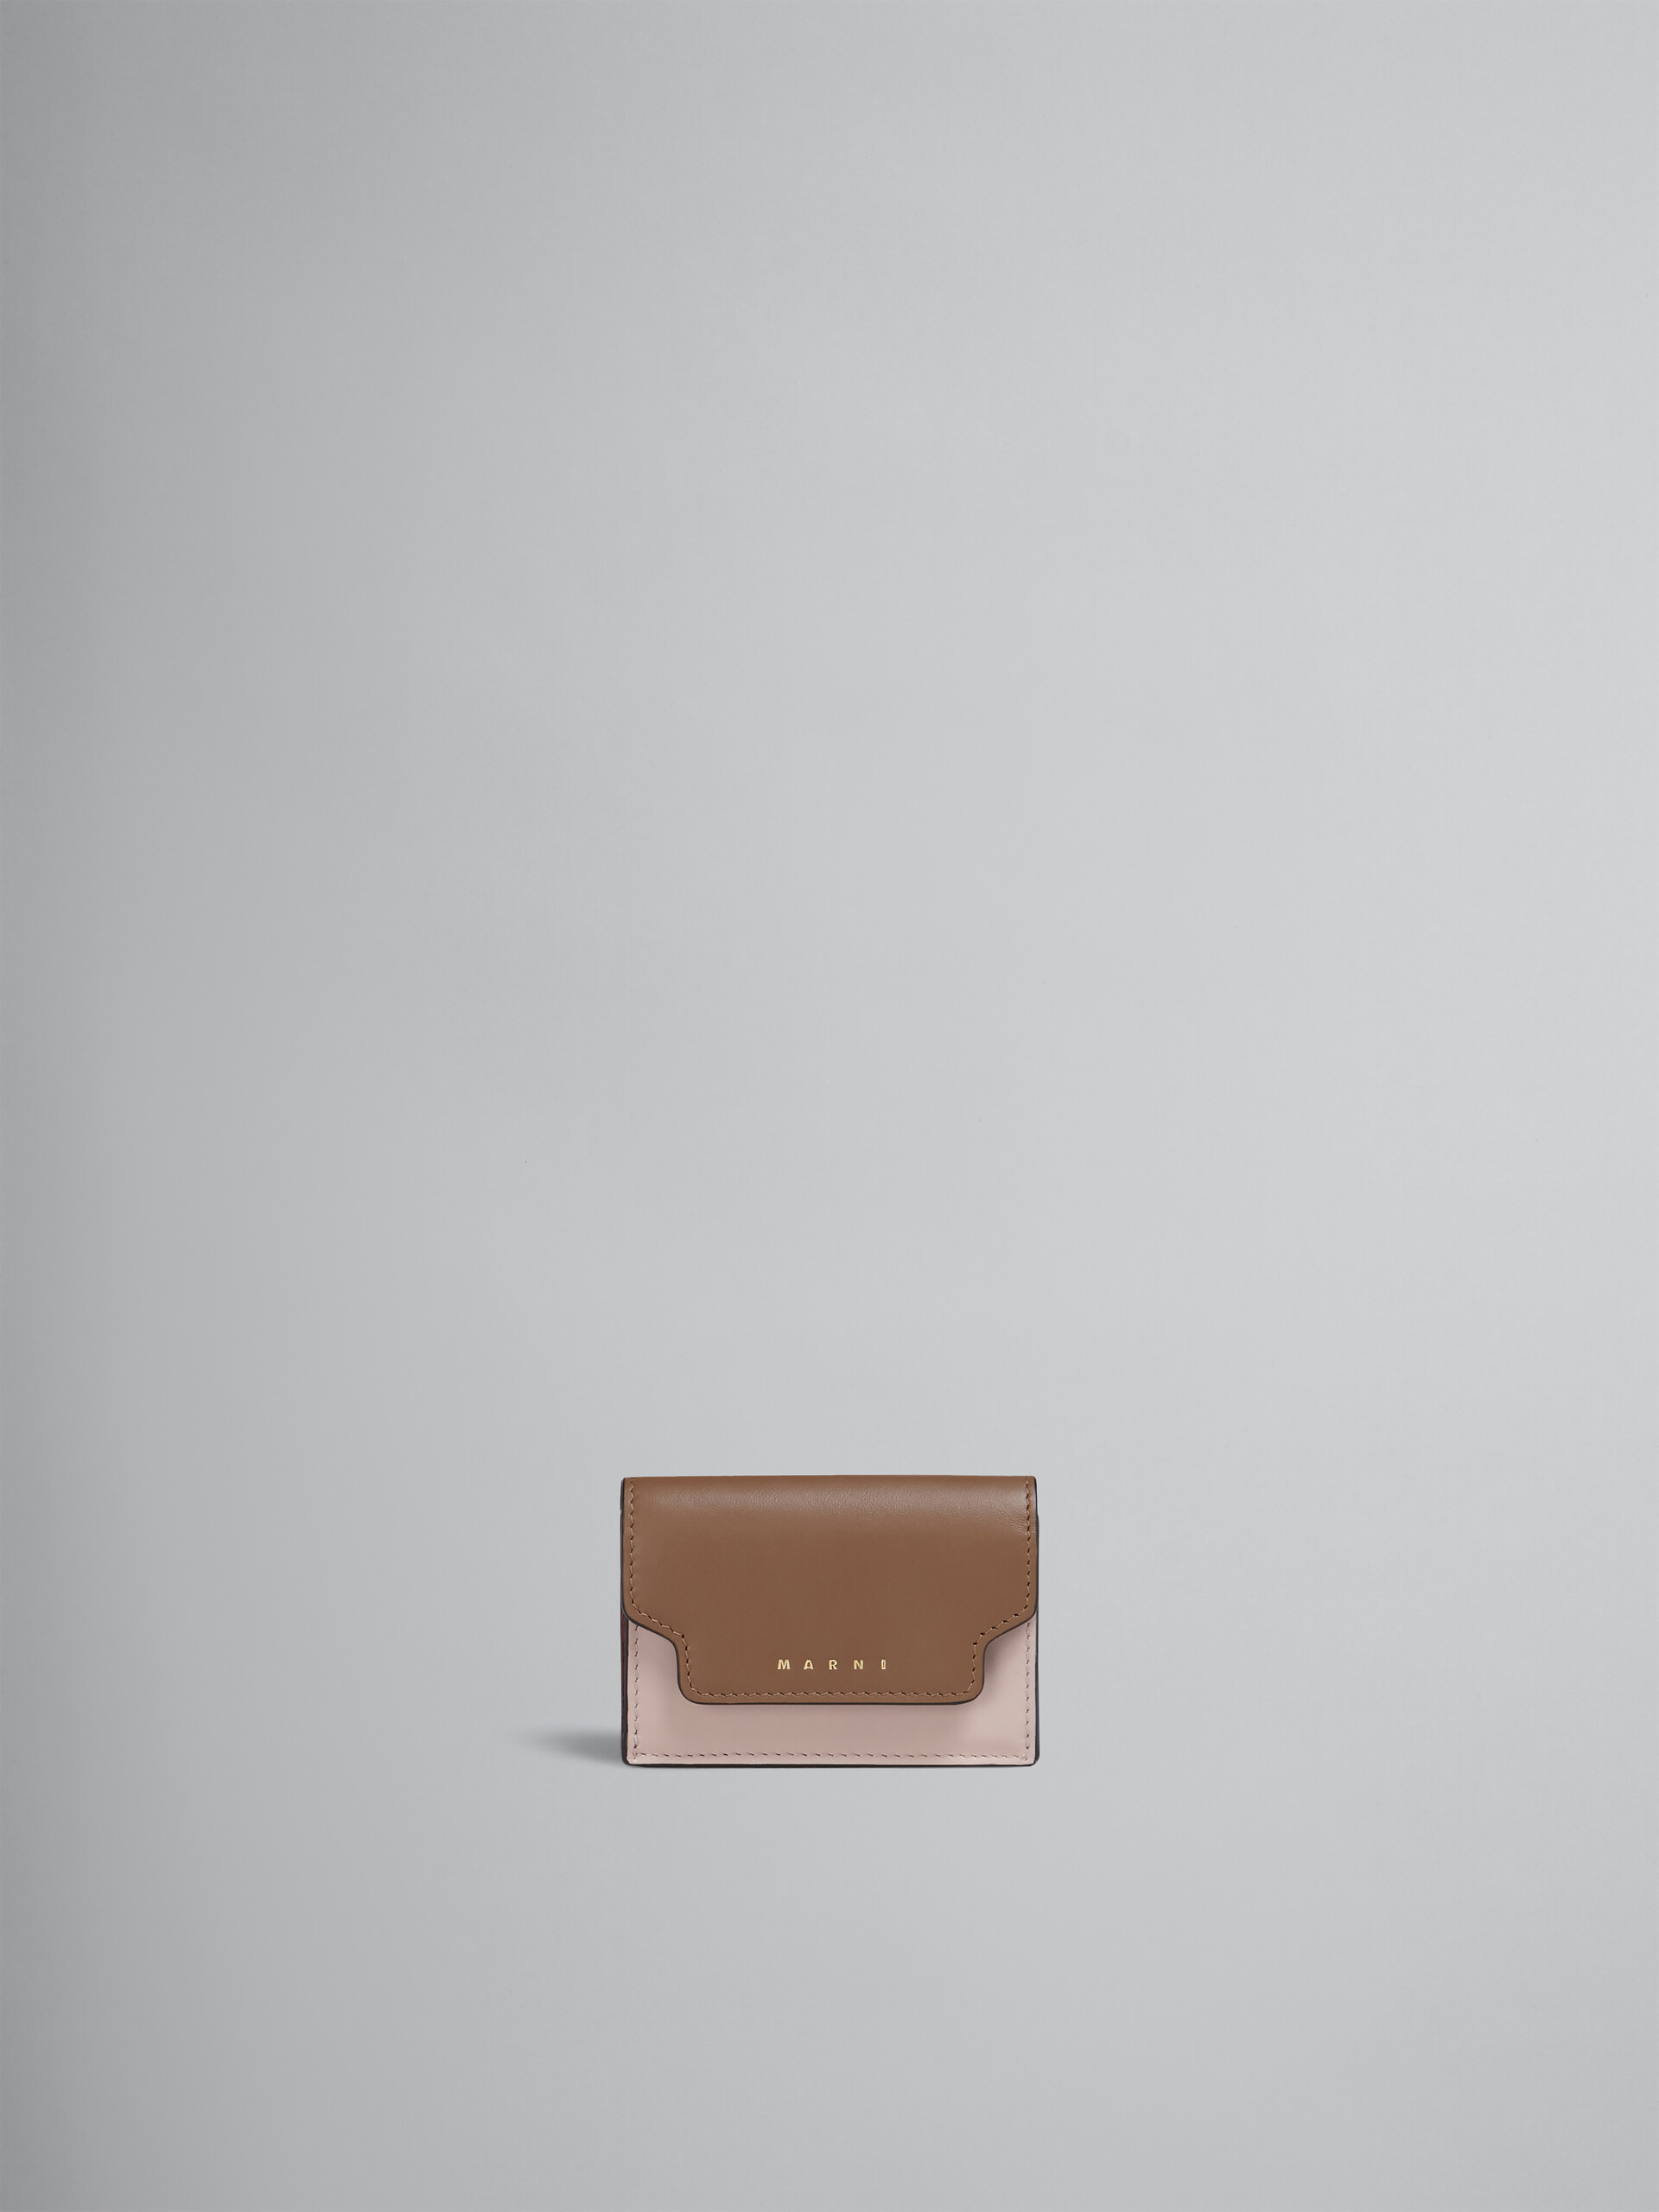 グレー、ホワイト、ブラウン レザー製三つ折りウォレット - 財布 - Image 1